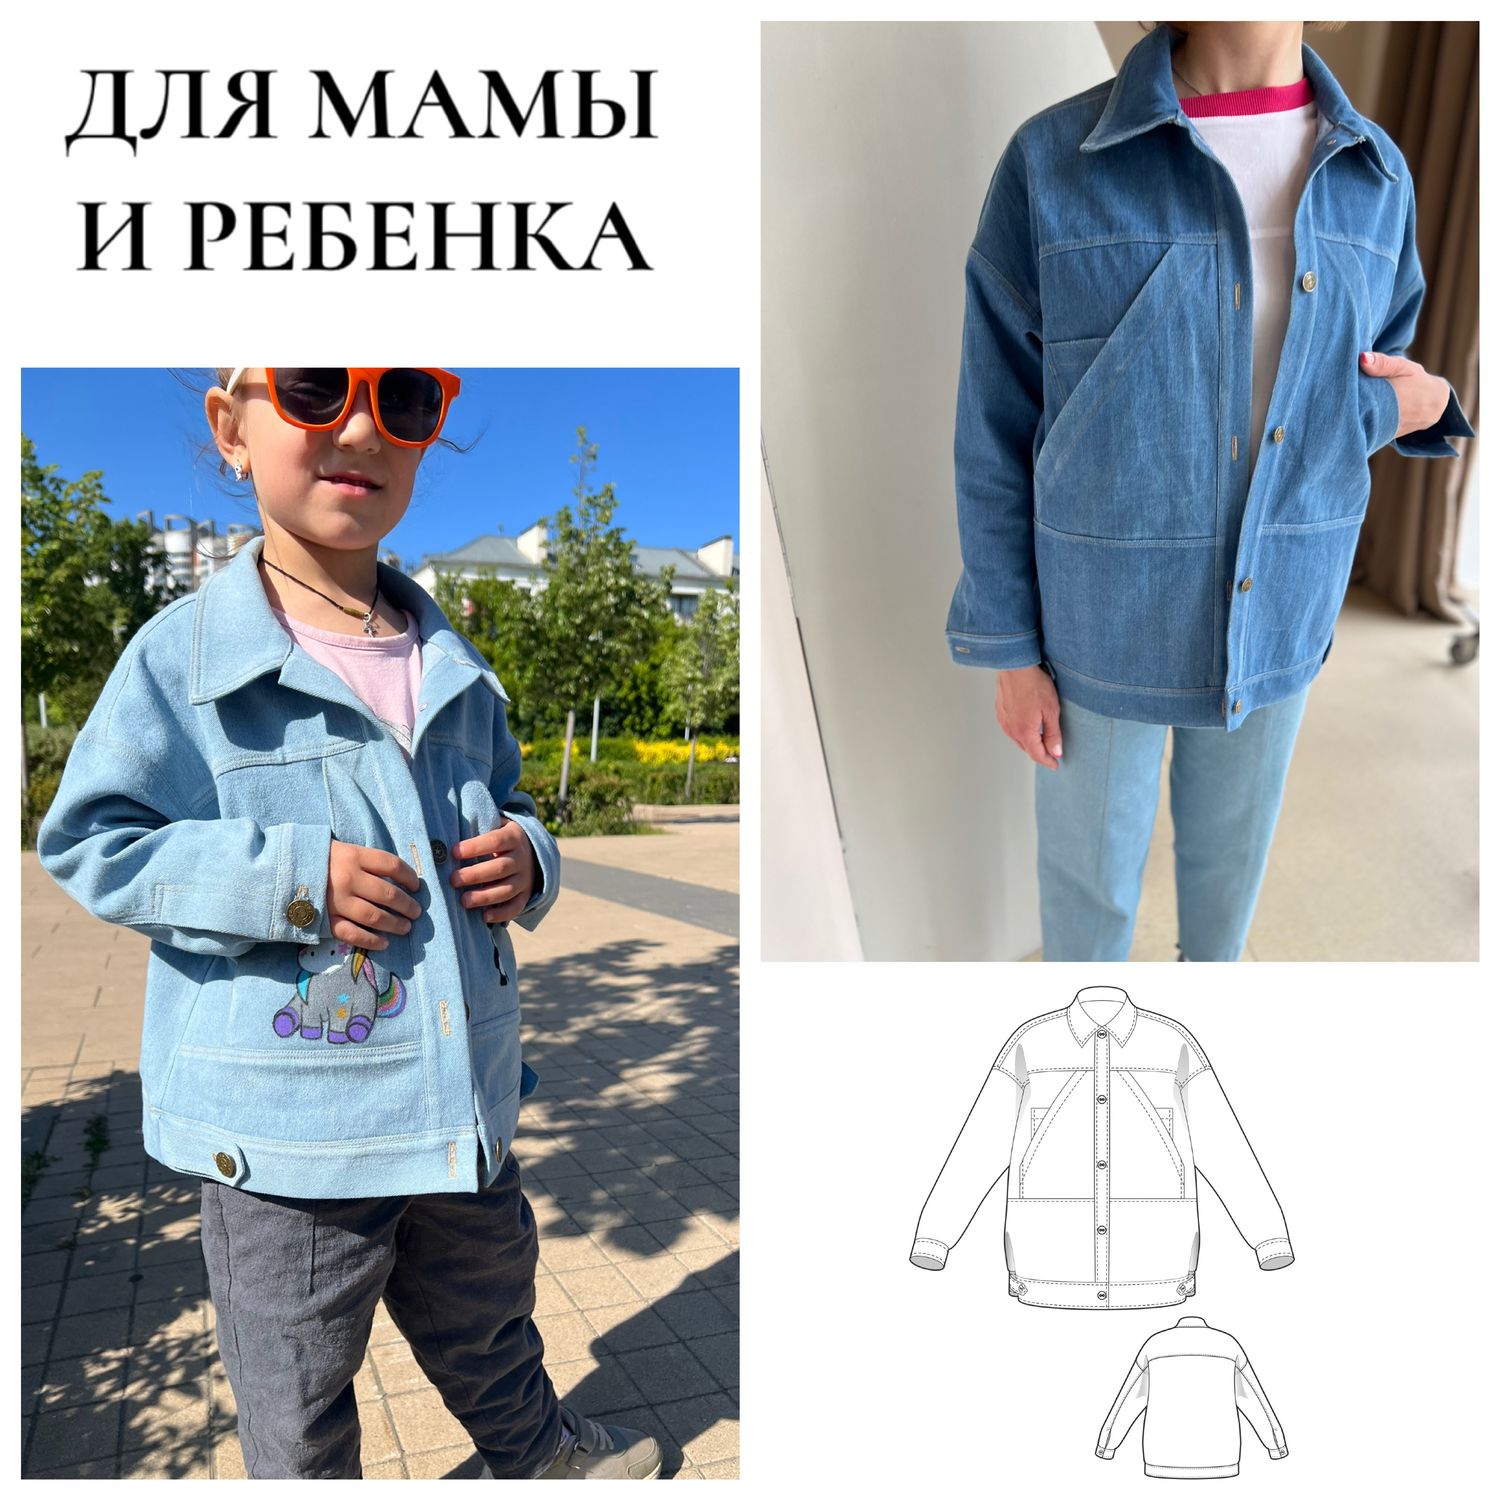 Пальто для девочек. Инструкция по распечатке выкроек и пошиву | Шить просто — l2luna.ru